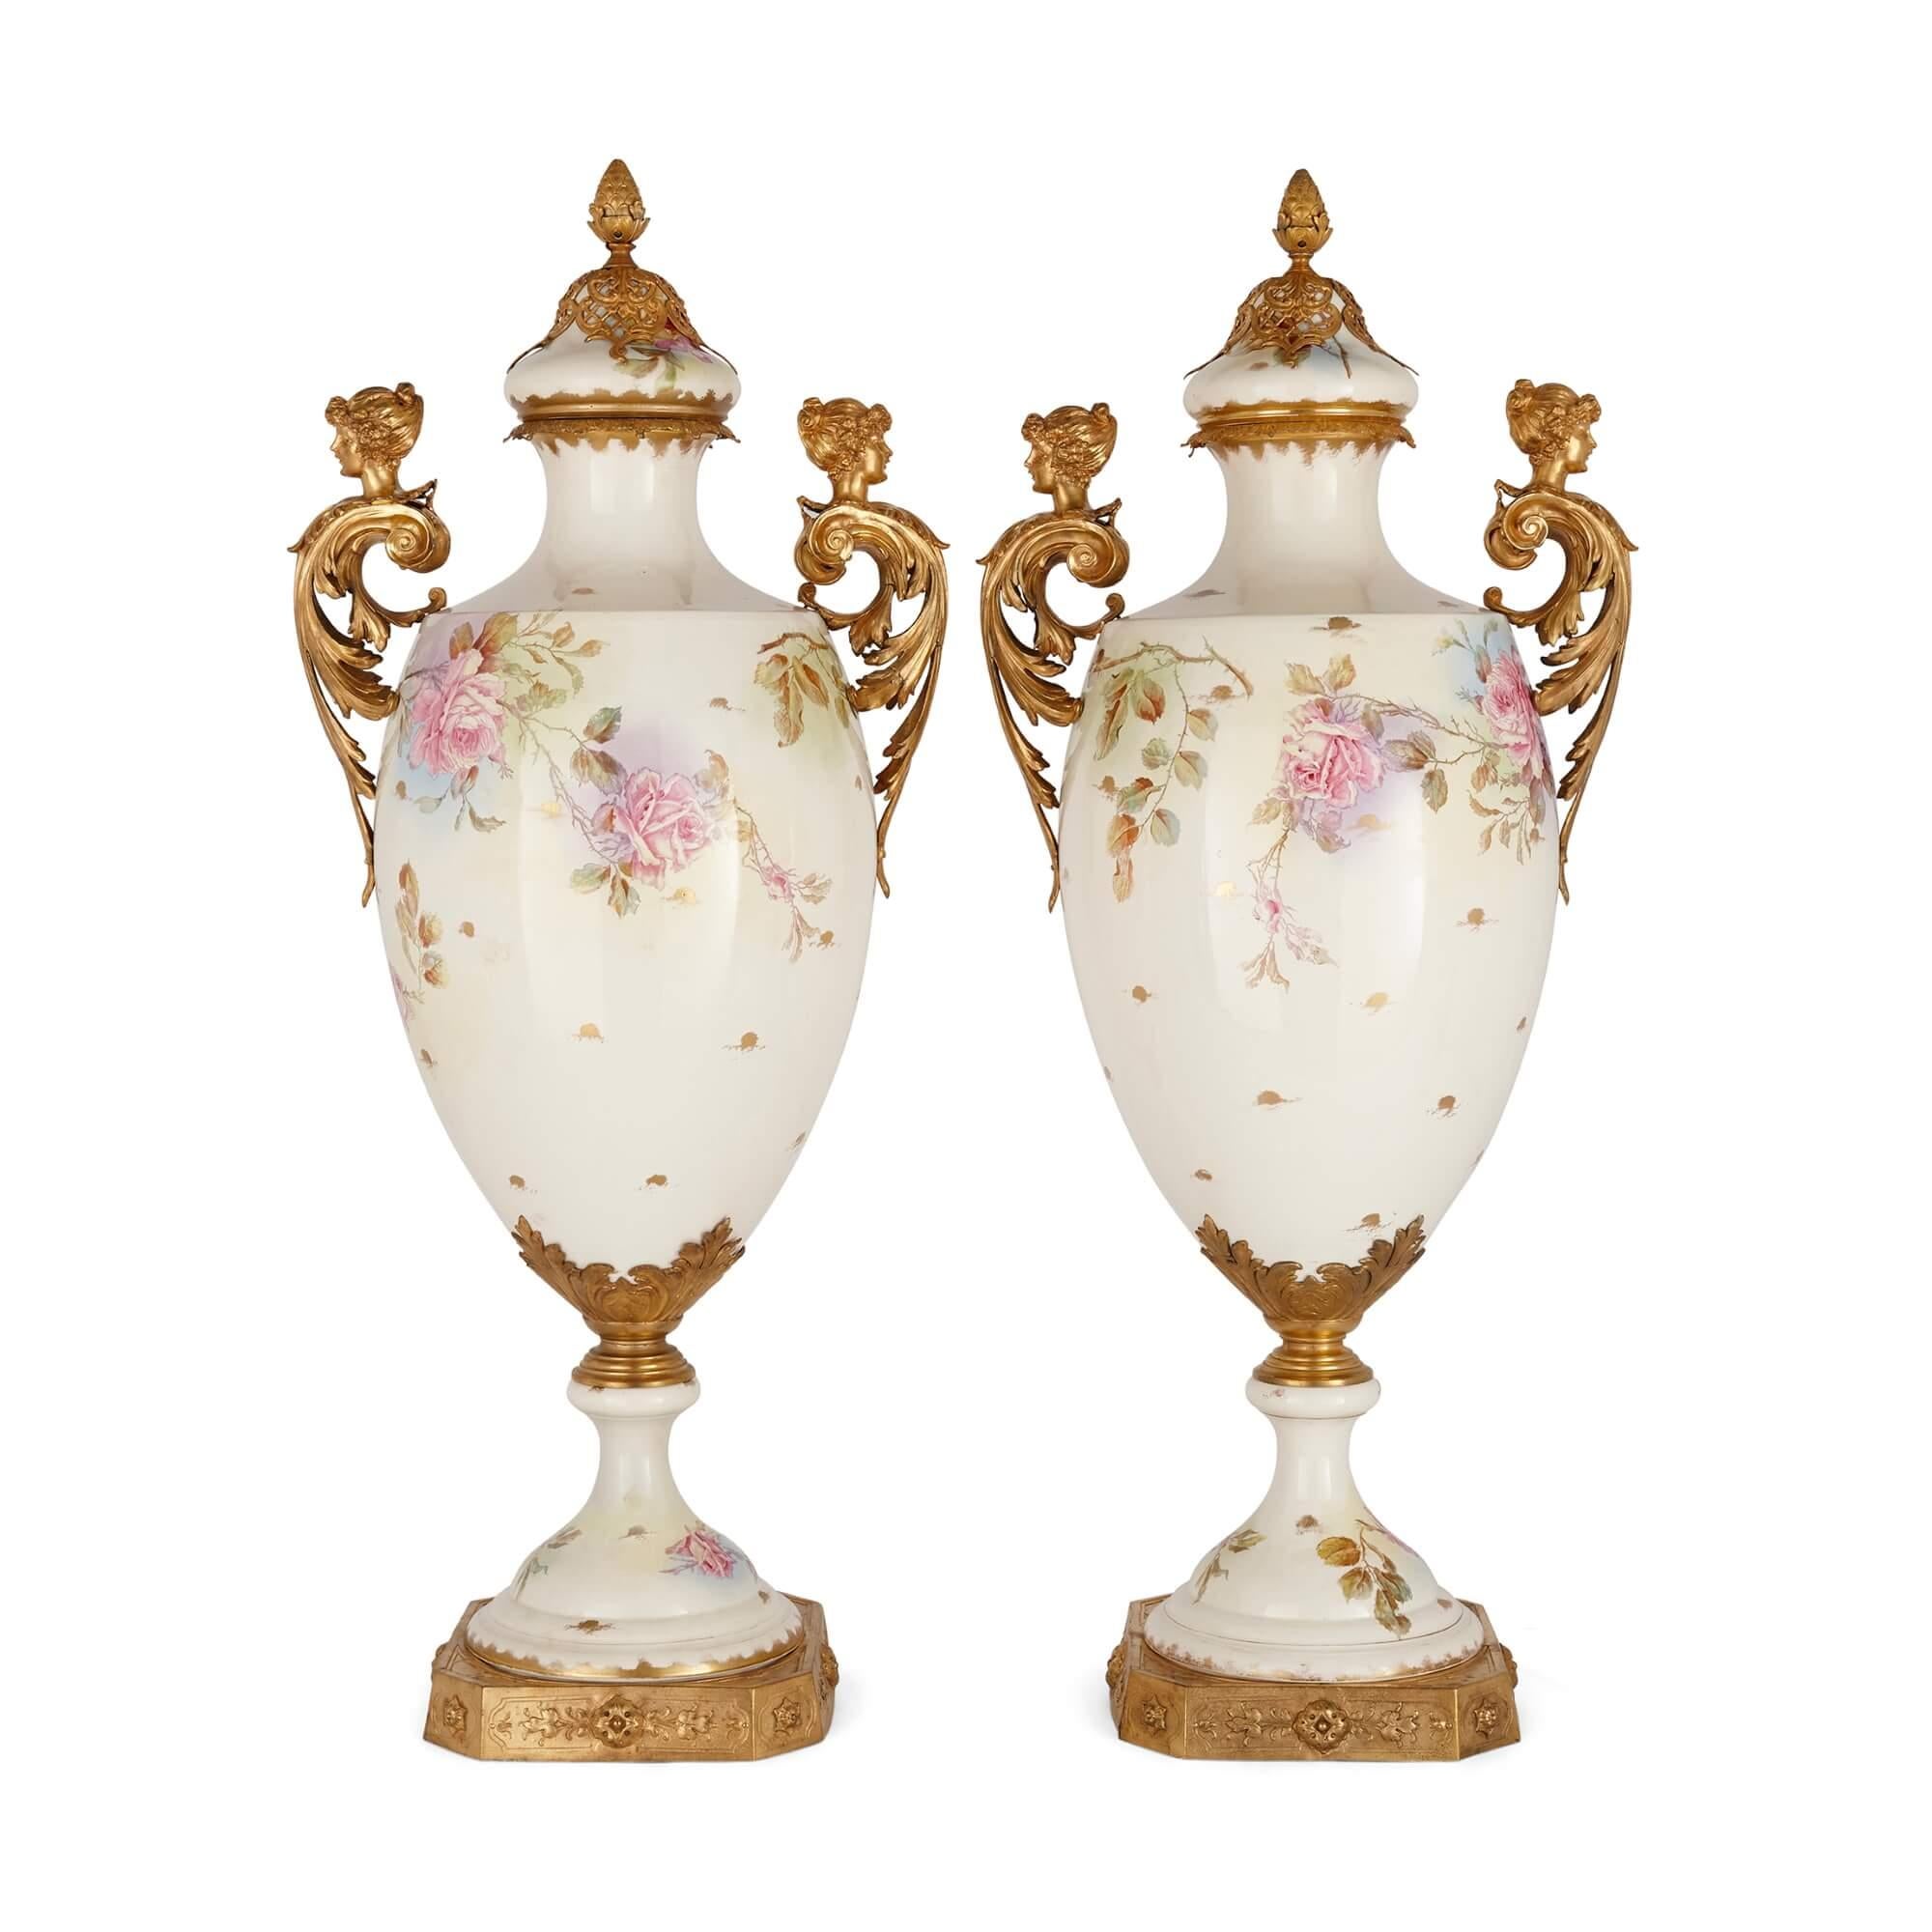 Paar große Vasen aus Porzellan und vergoldetem Metall im Stil von Sèvres
Französisch, 20. Jahrhundert
Höhe 97cm, Breite 42cm, Tiefe 30cm

Diese feinen Vasen mit Deckeln, kunstvollen Goldmetallbeschlägen, floral bemalten, dekorativen Porzellankörpern